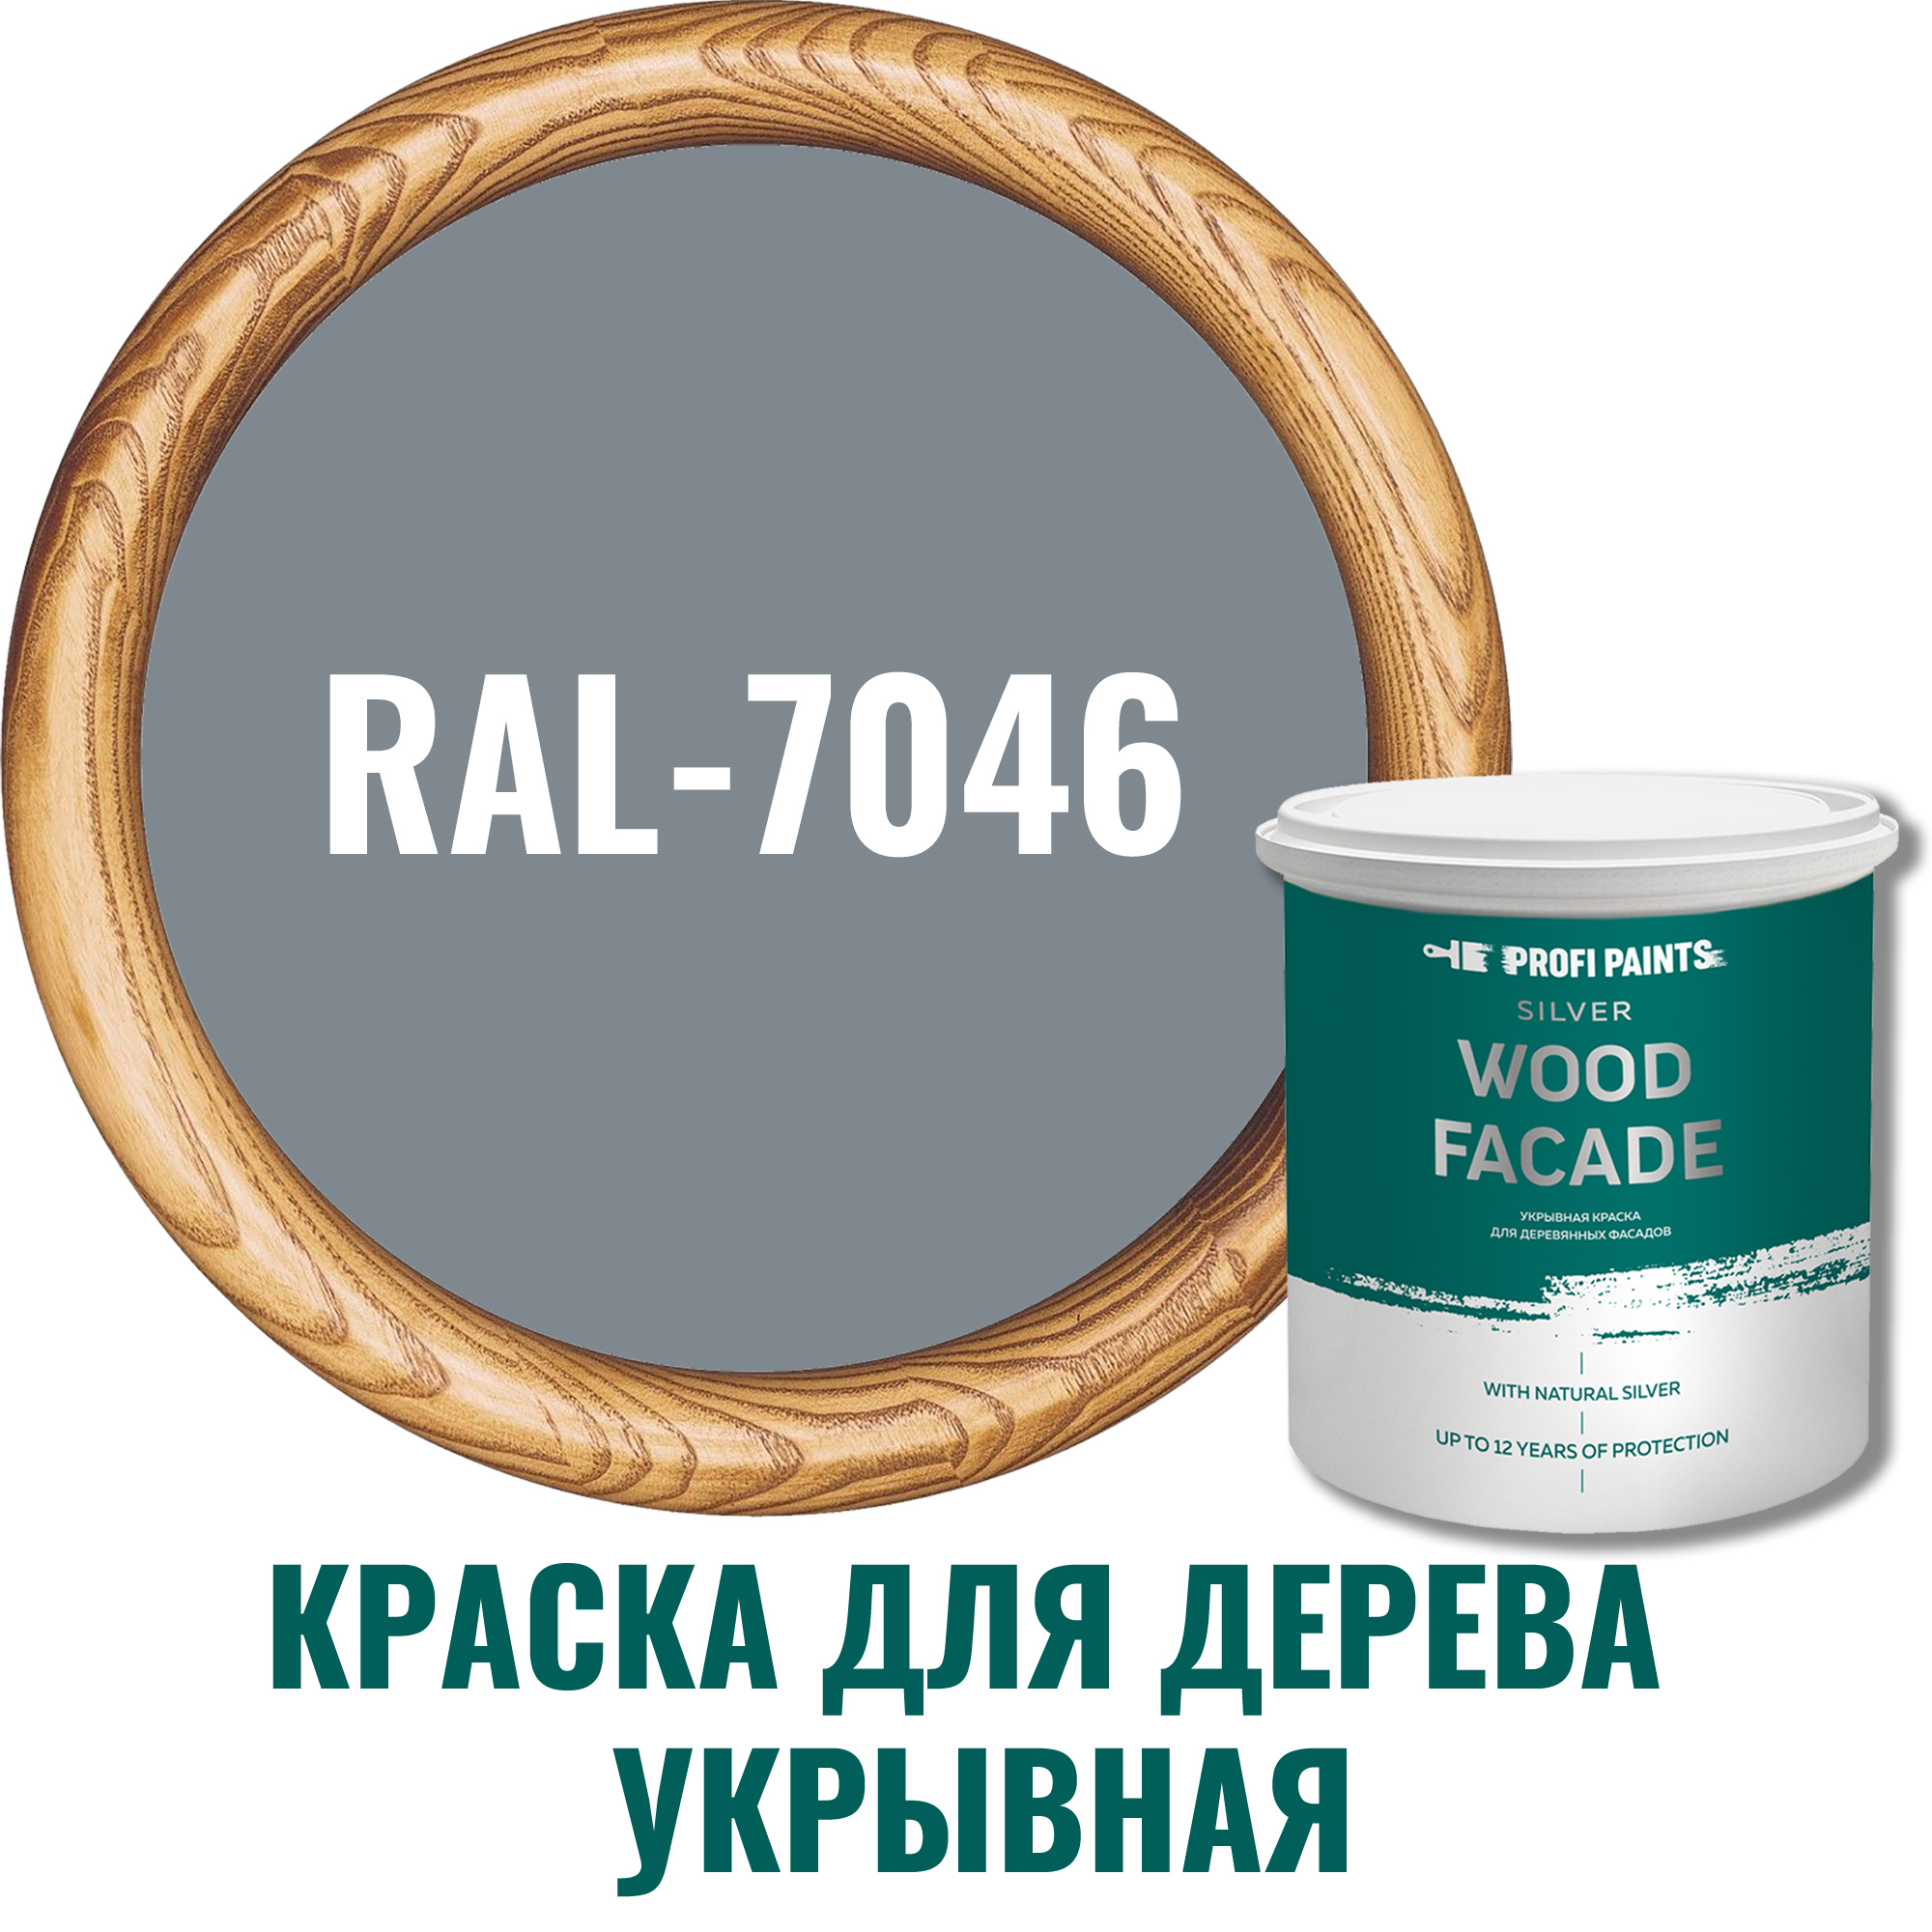 91106615 Краска для дерева 11255_D SILVER WOOD FASADE цвет RAL-7046 серый 9 л STLM-0487608 PROFIPAINTS